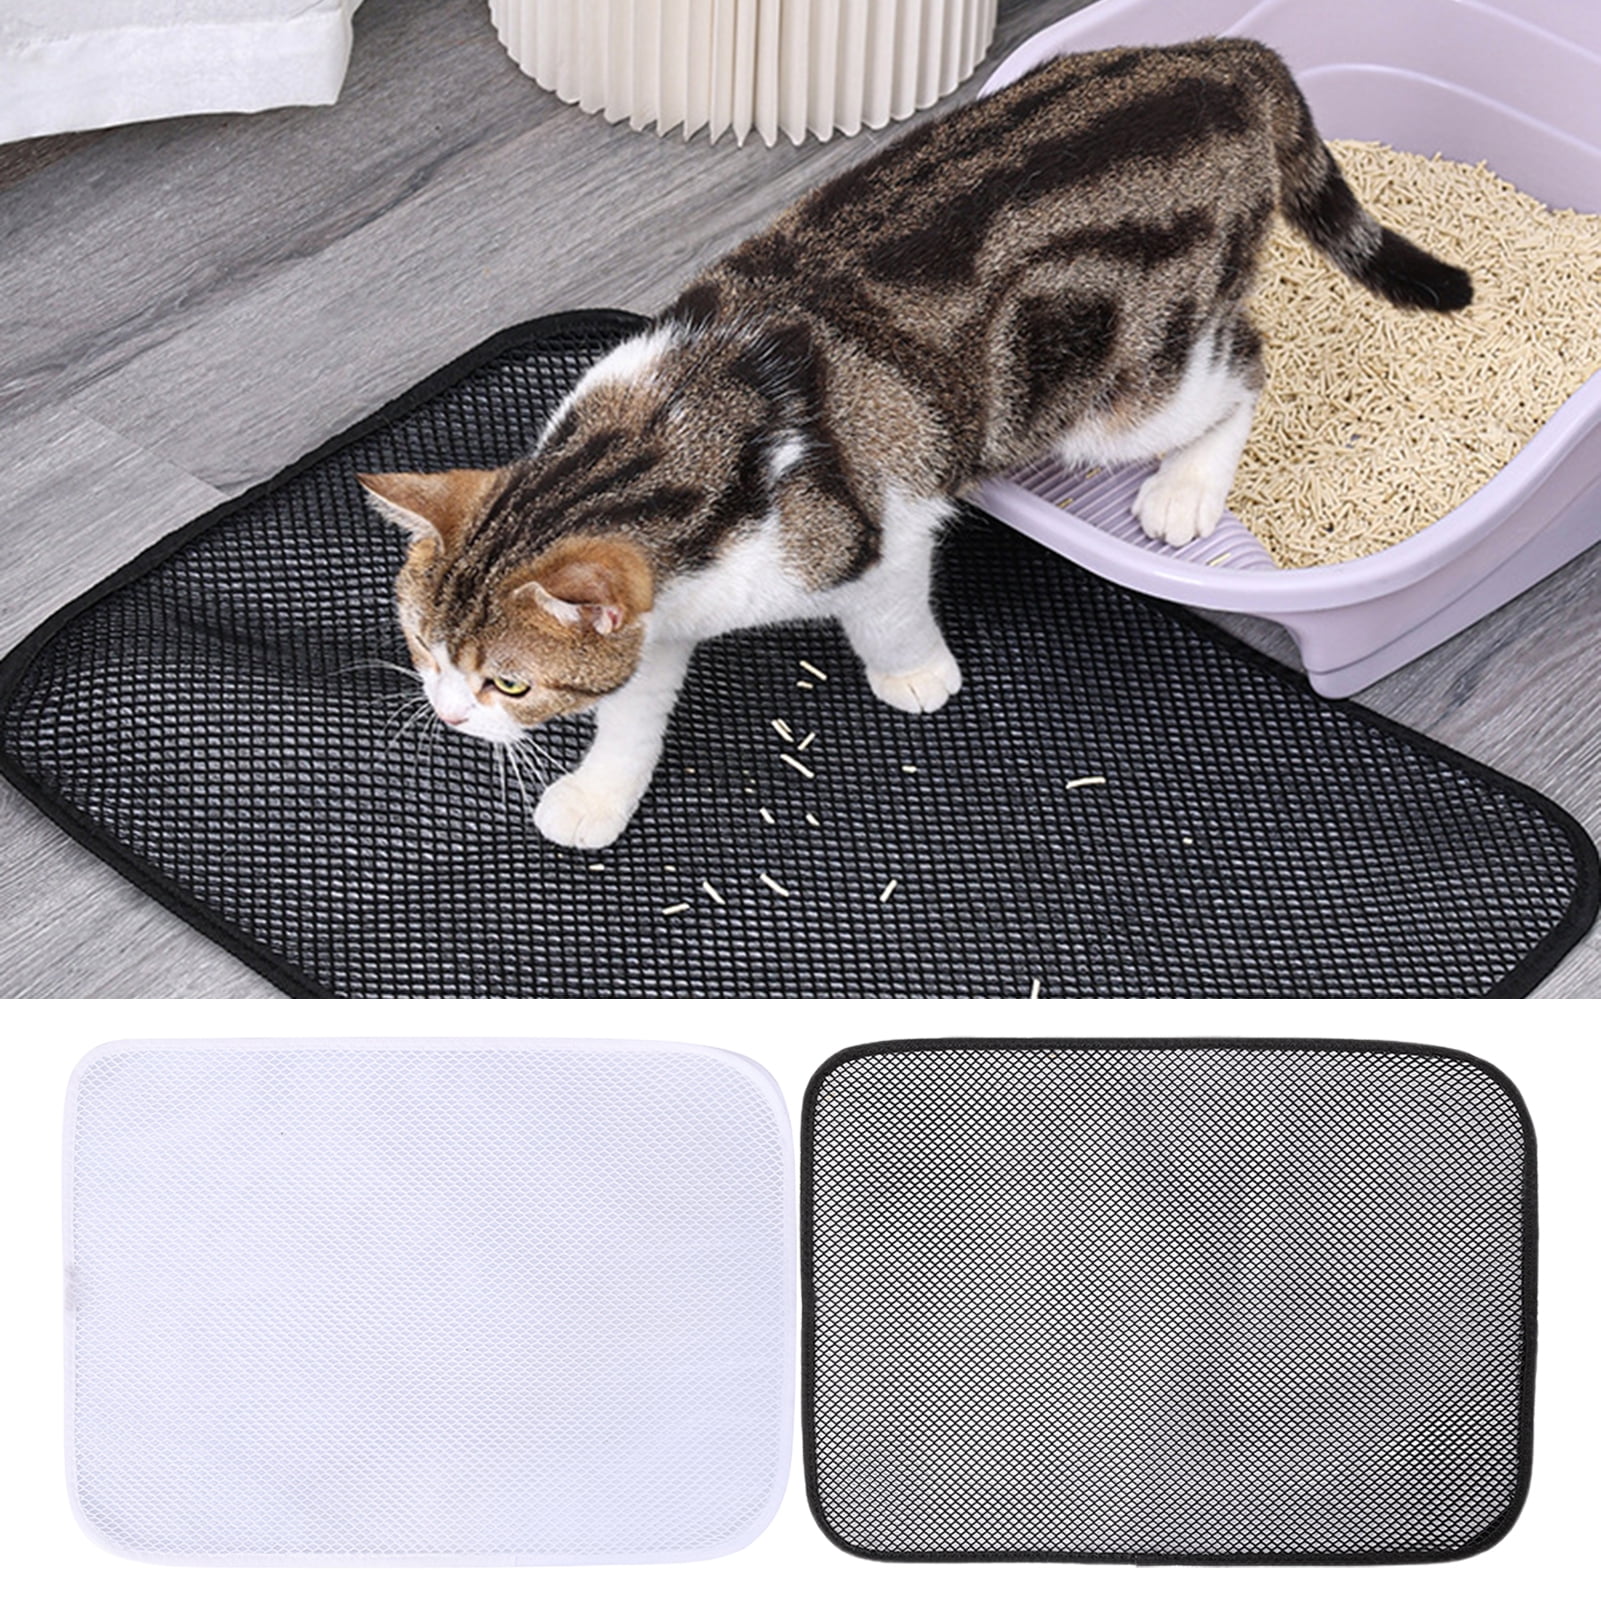 KittyPad™ - Waterproof Cat Litter Mat